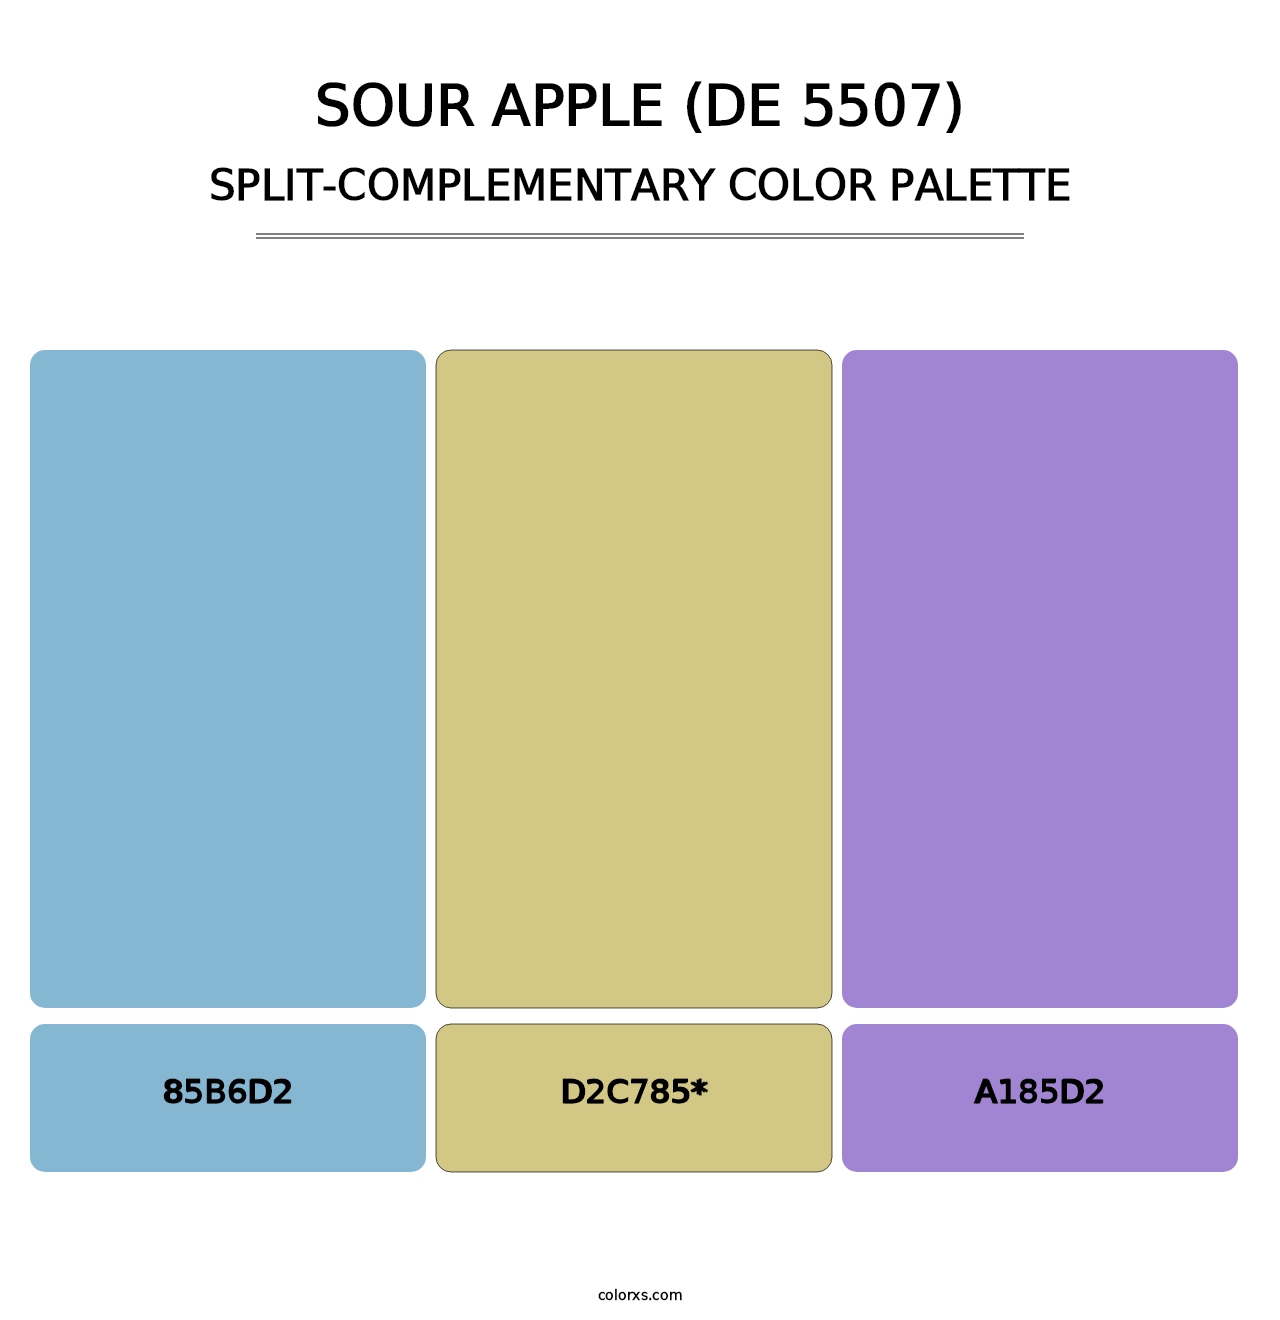 Sour Apple (DE 5507) - Split-Complementary Color Palette